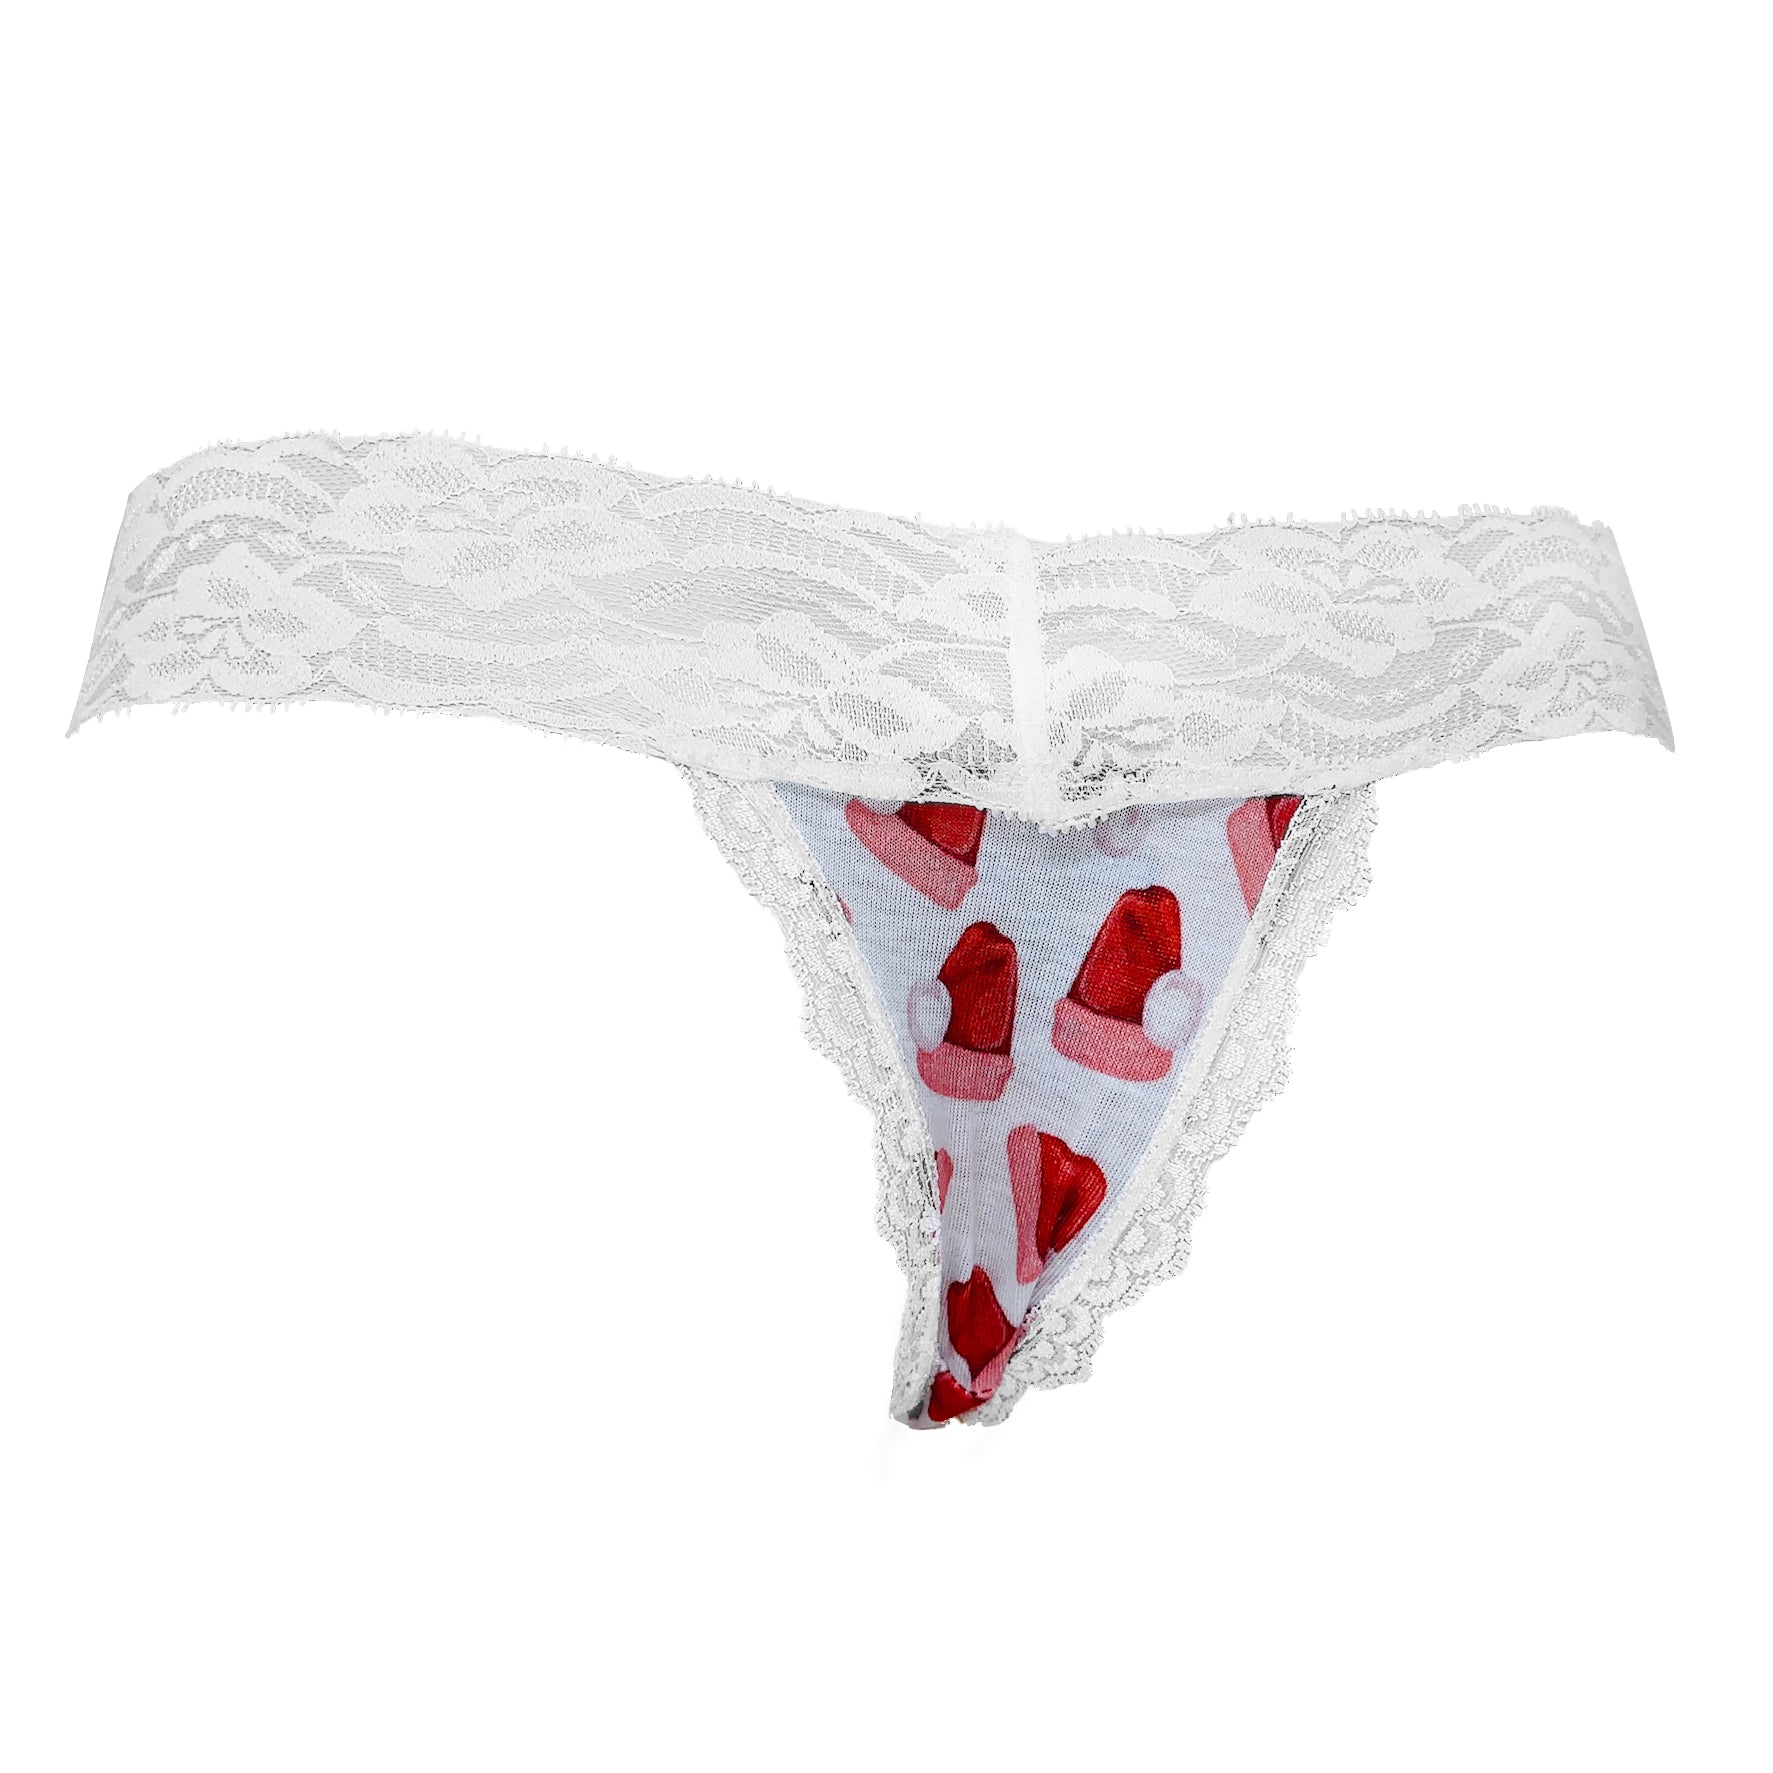 Popcheeks Undies - Pretty Printed Panties